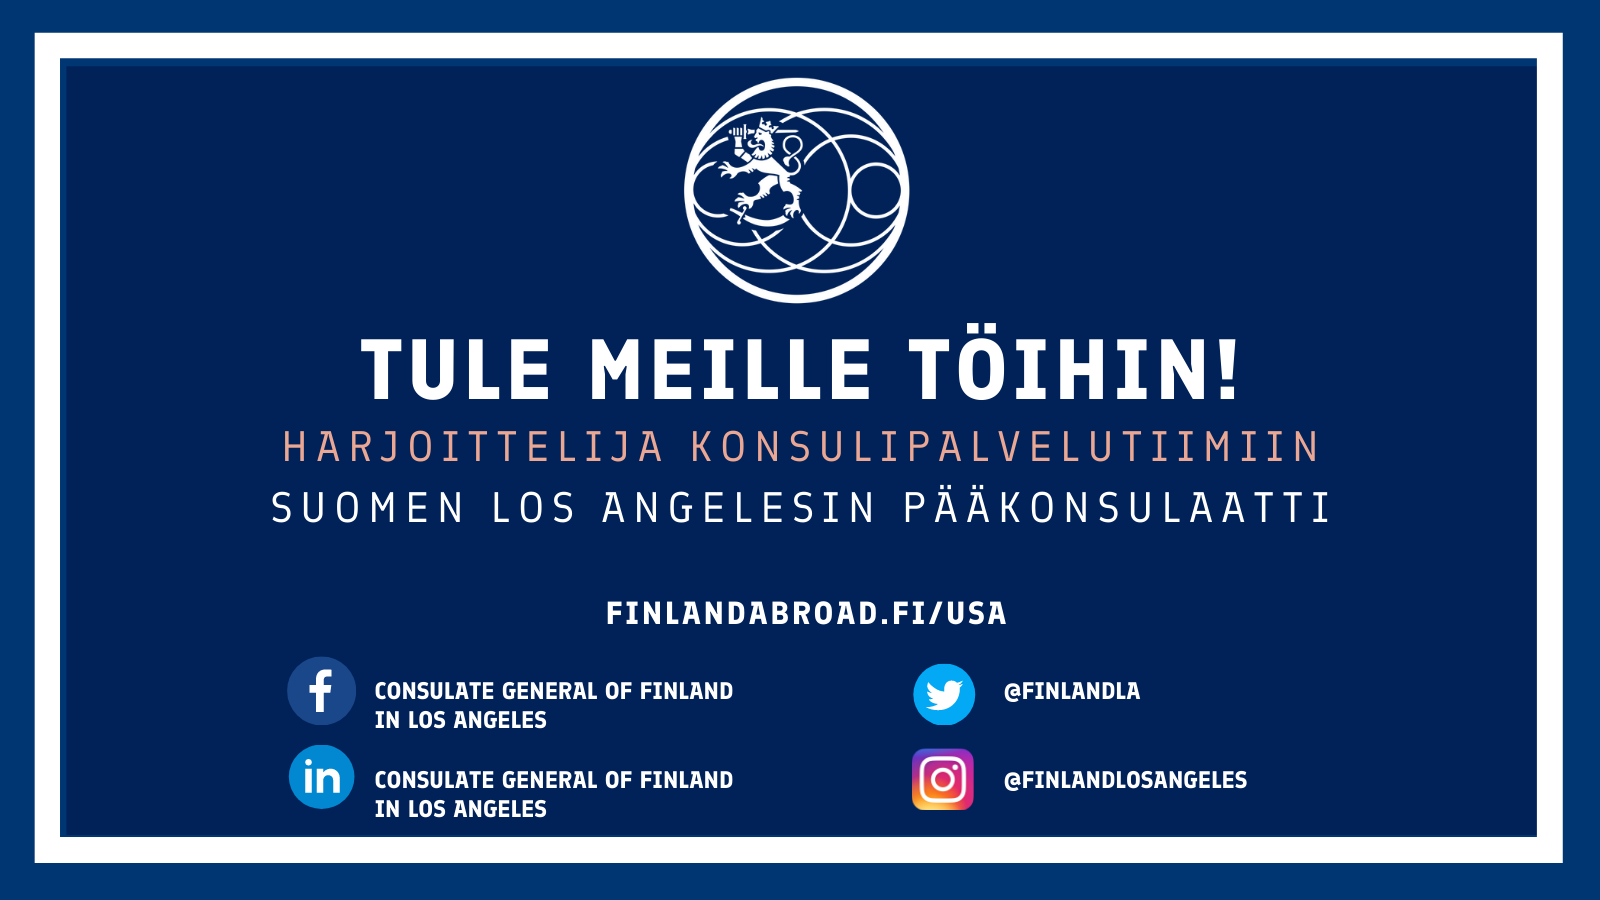 Suomen pääkonsulaatti Los Angelesissa hakee harjoittelijaa konsulipalvelutiimiin